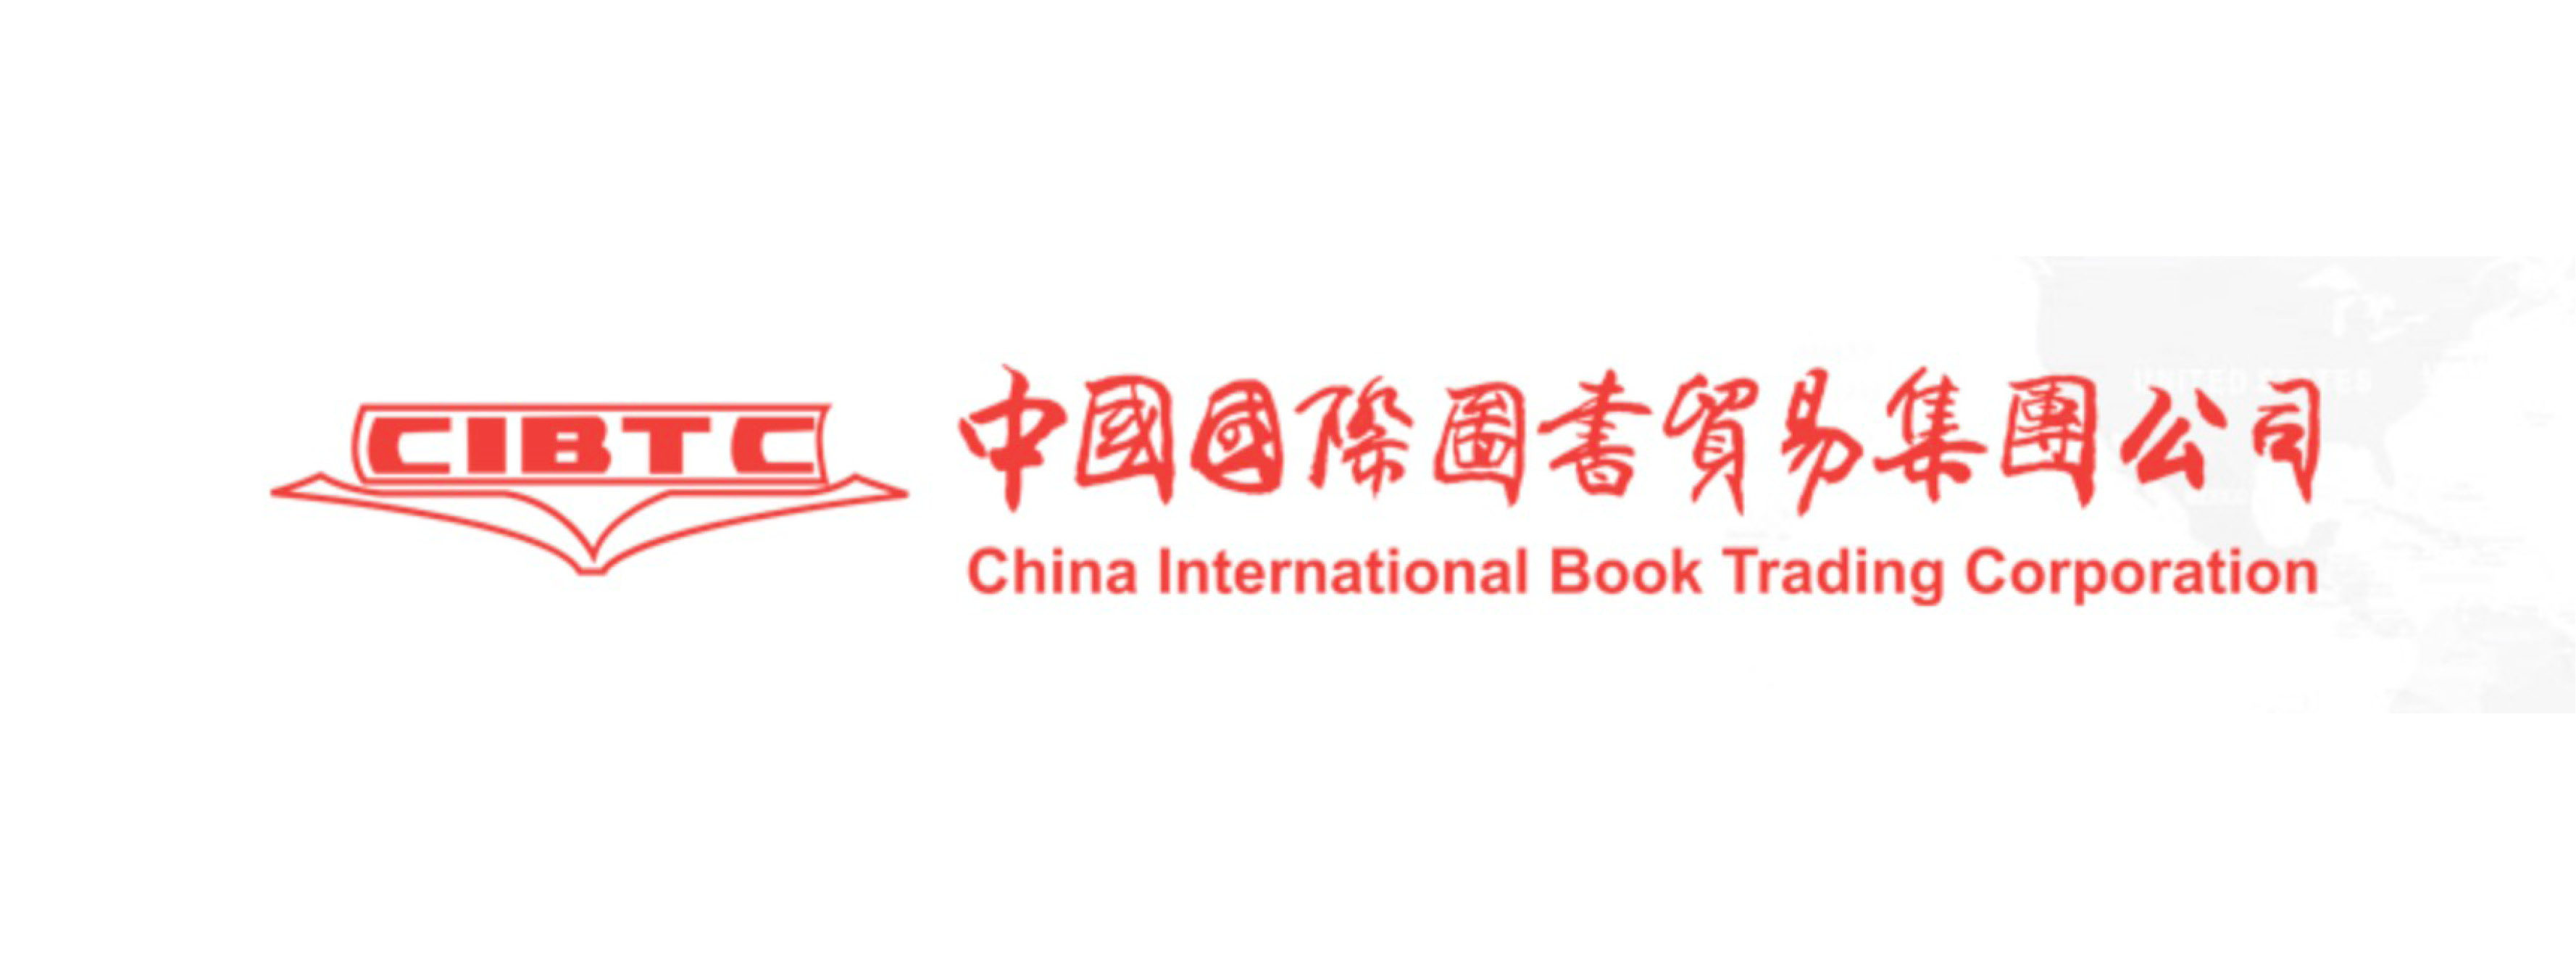 中国国际图书贸易集团公司